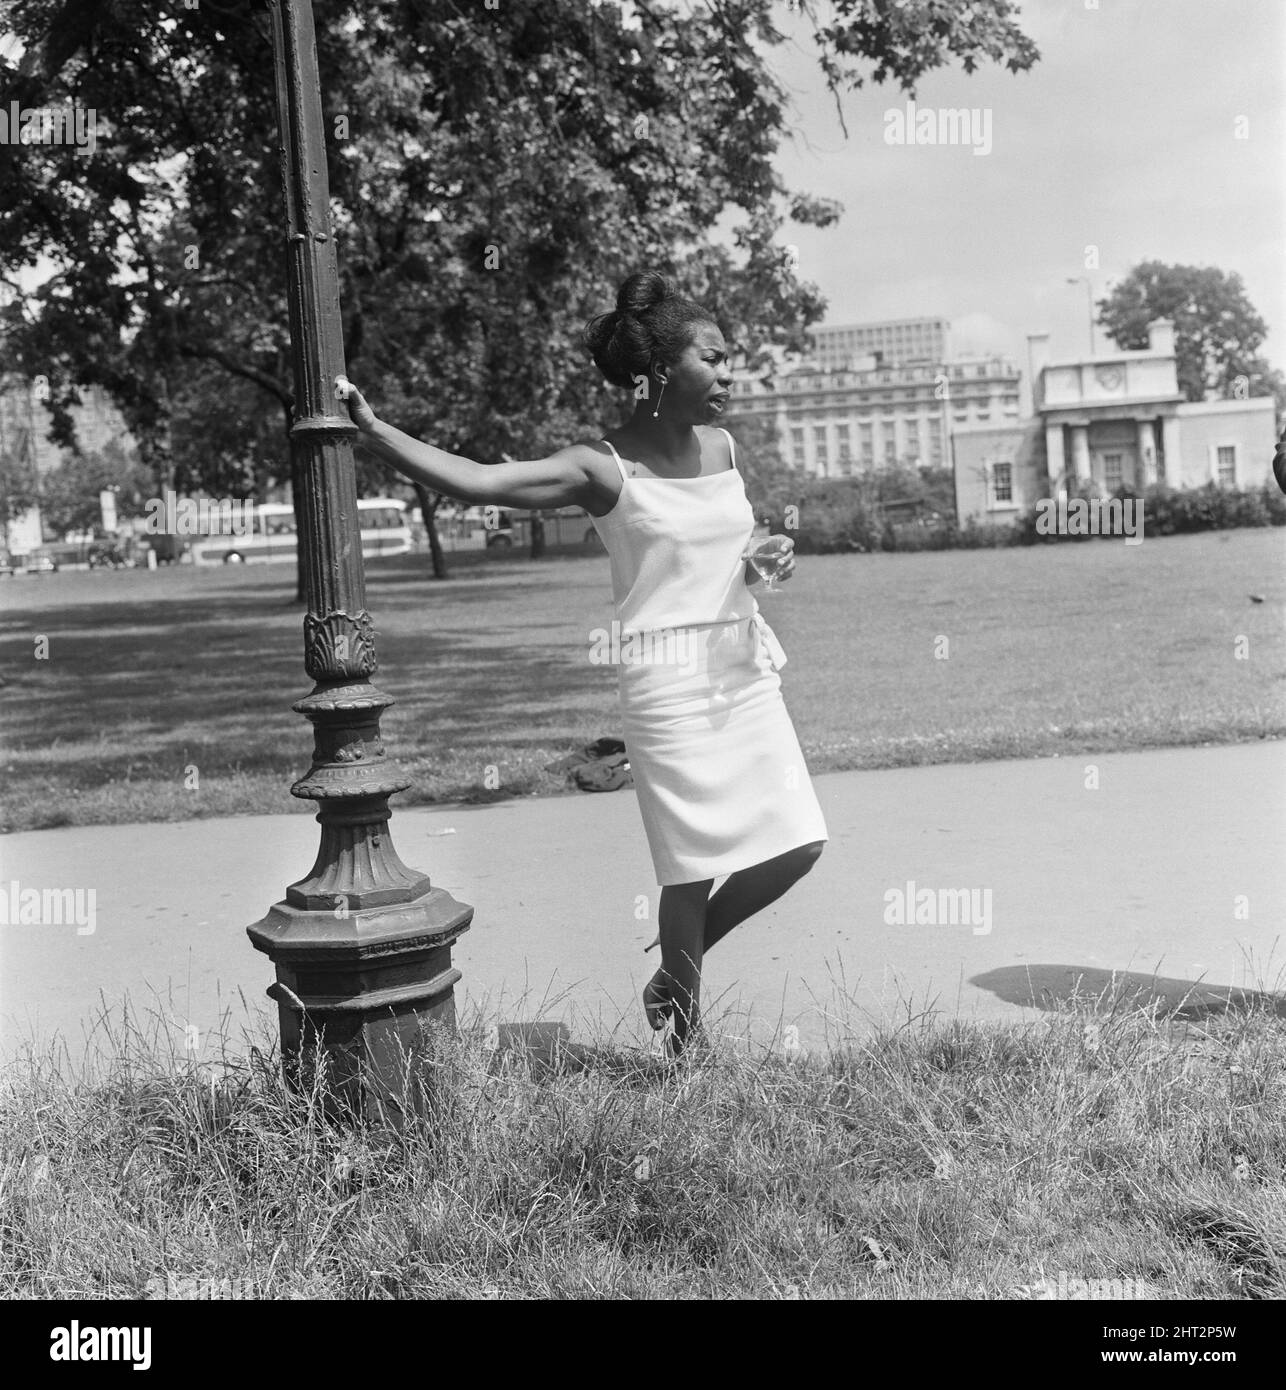 Nina Simone, raffigurata presso un ufficio stampa della sua Philips Record Company, presso Stanhope Place, Hyde Park, Londra, W2. Nina Simone era una cantante, cantautore, musicista, arrangiatore e attivista per i diritti civili. La sua musica ha abbracciato un'ampia gamma di stili musicali, tra cui classica, jazz, blues, folk, R&B, vangelo e pop. Foto scattata il 14th luglio 1965 Foto Stock